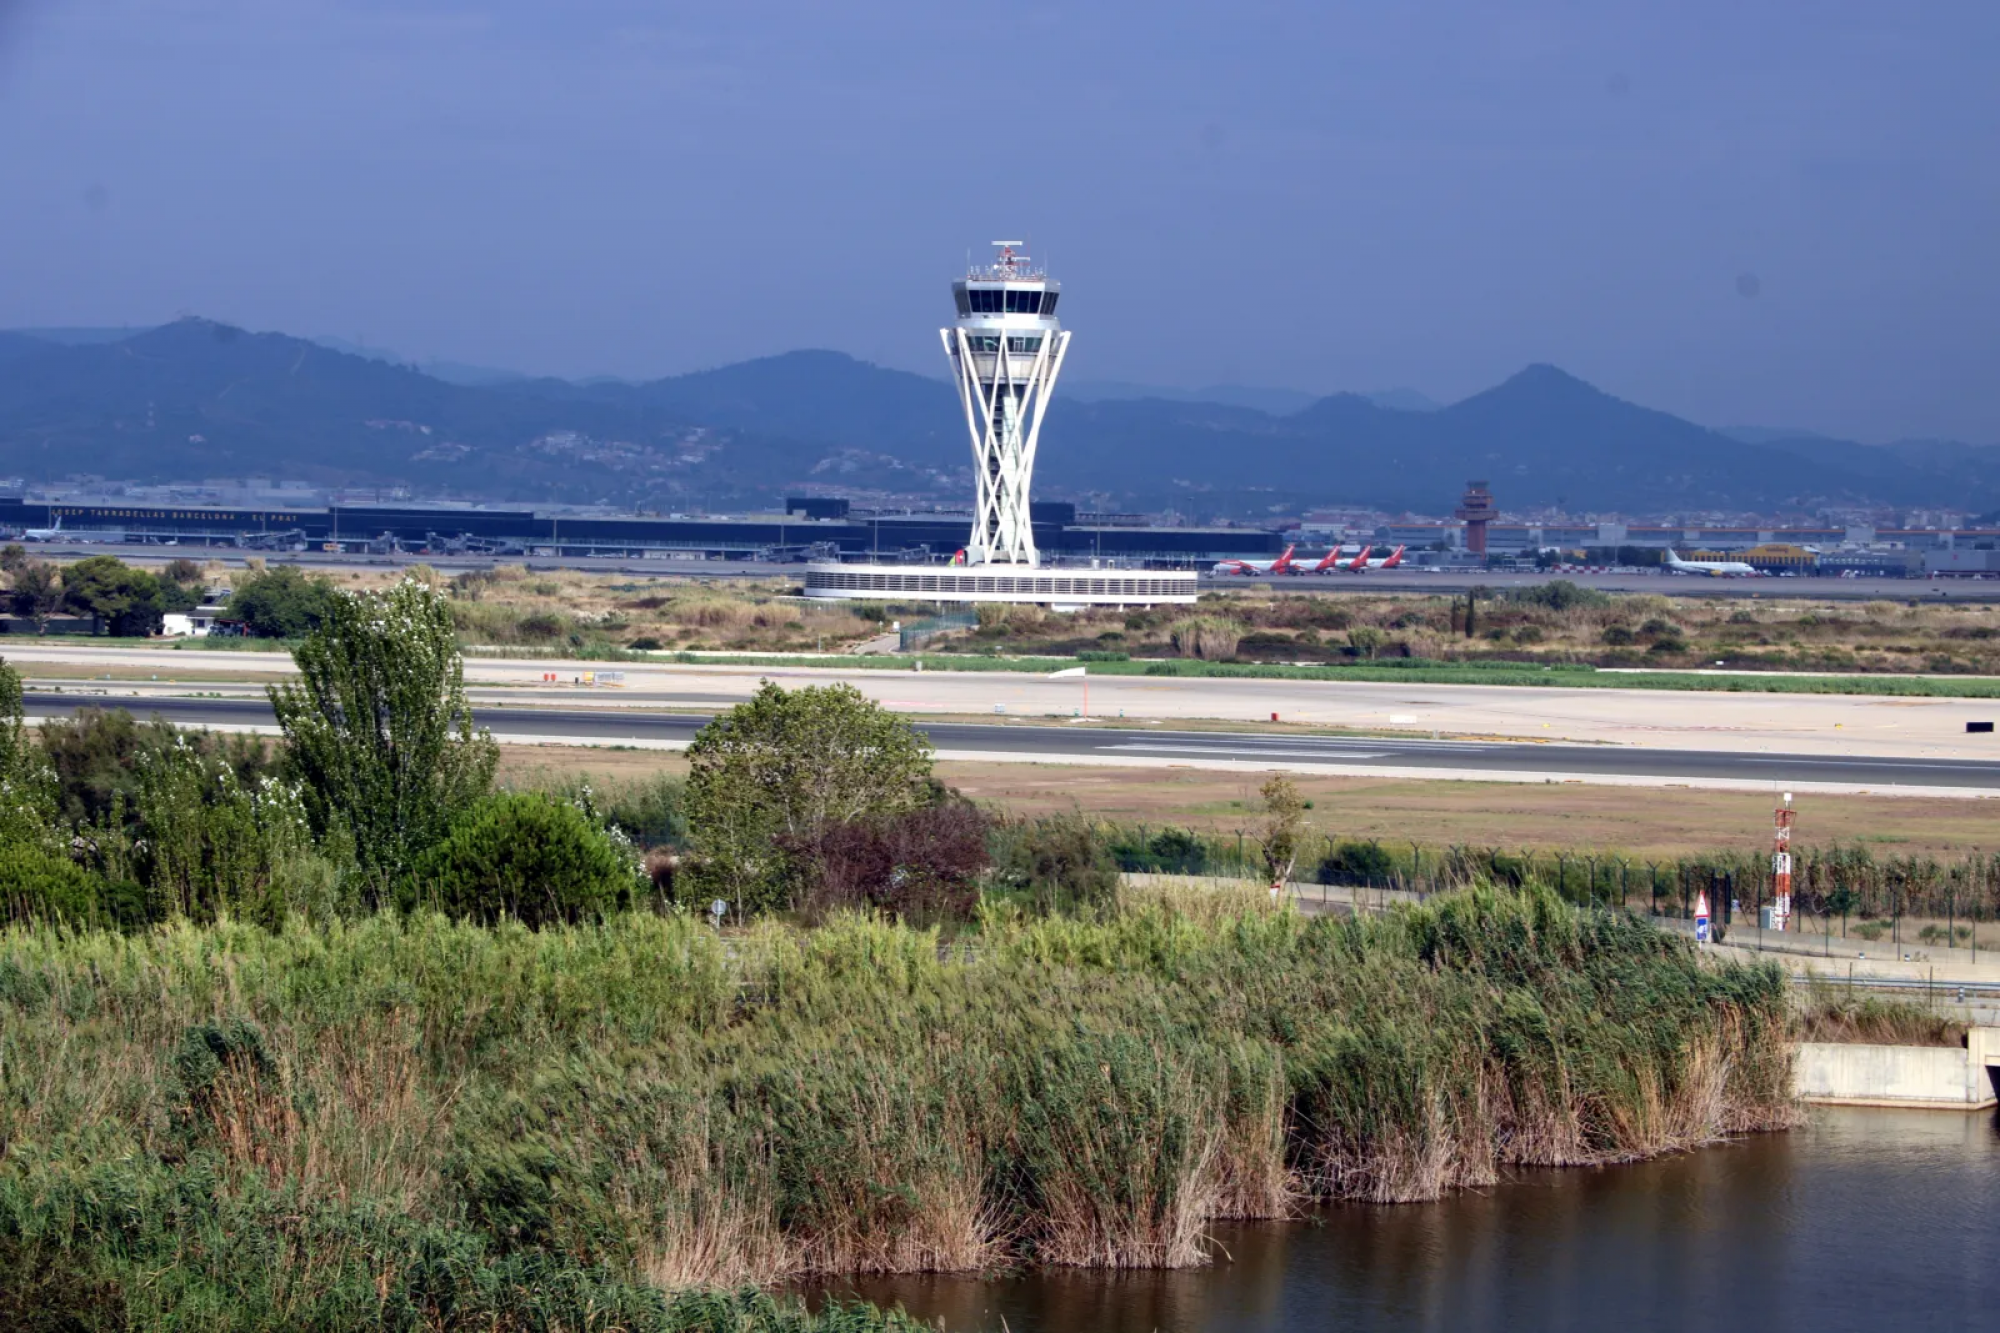 Conoce la solución innovadora para ampliar el Aeropuerto de El Prat sin dañar el medio ambiente